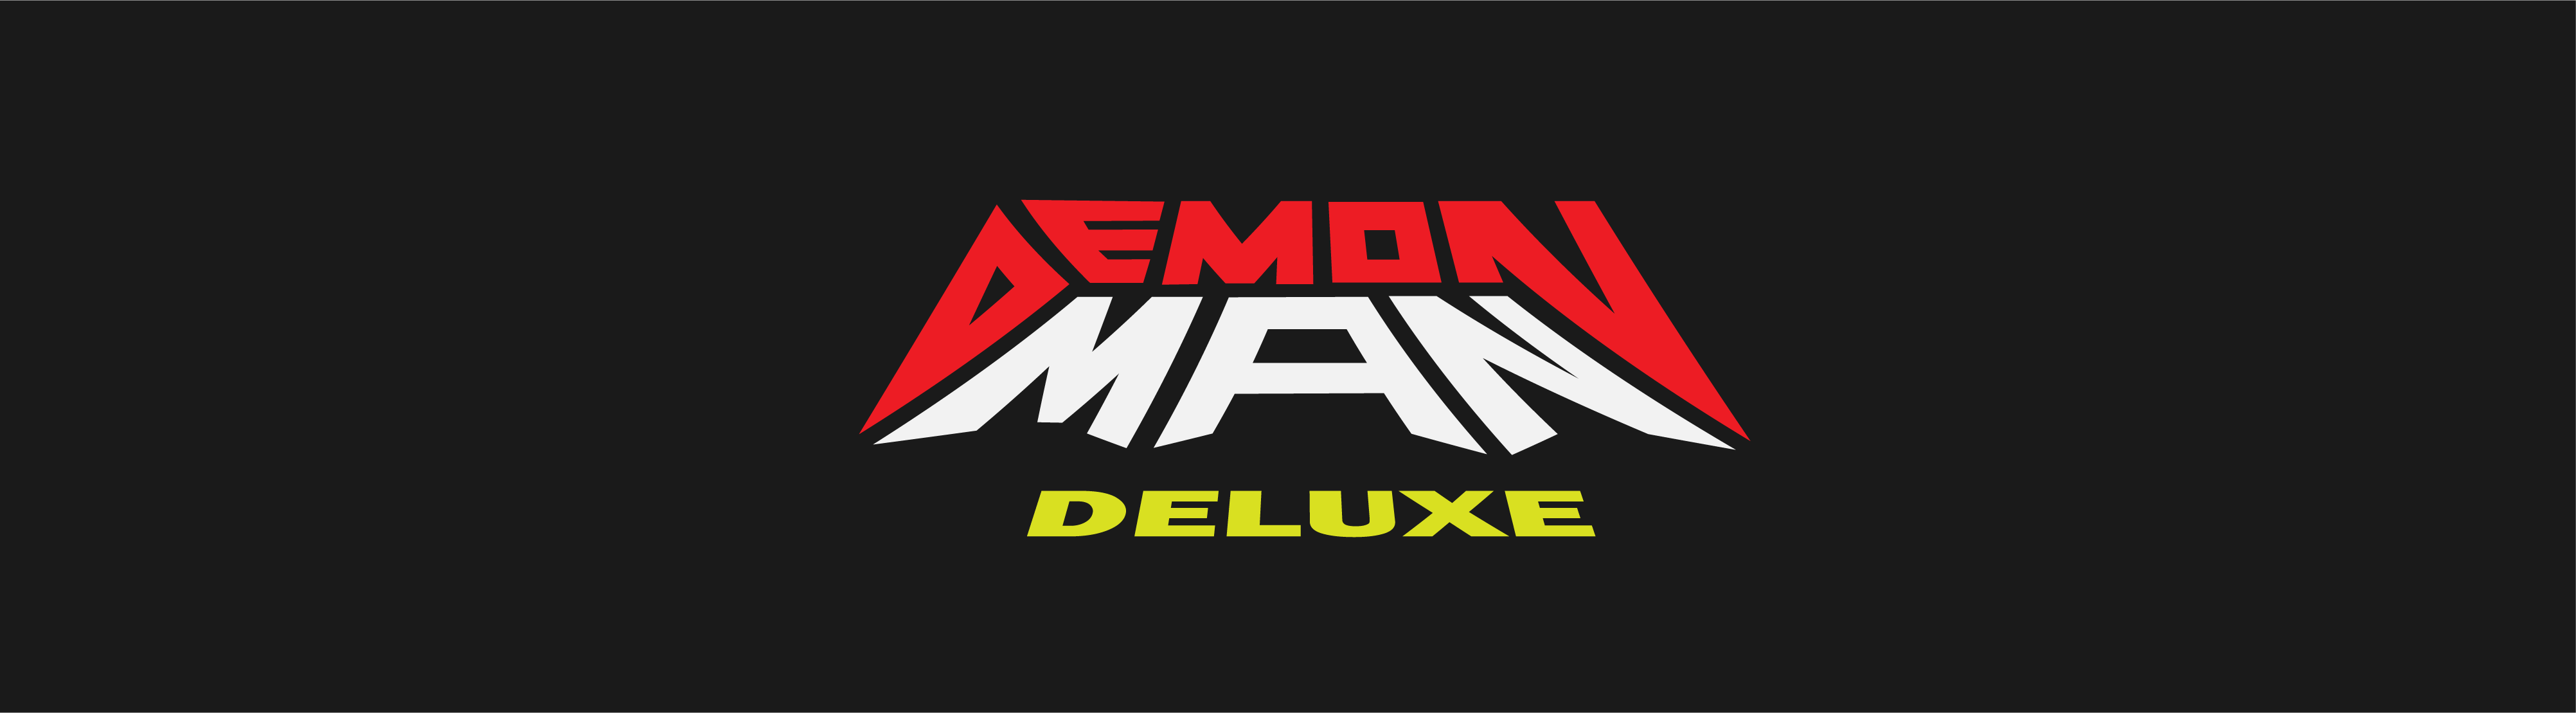 Demon Man Deluxe